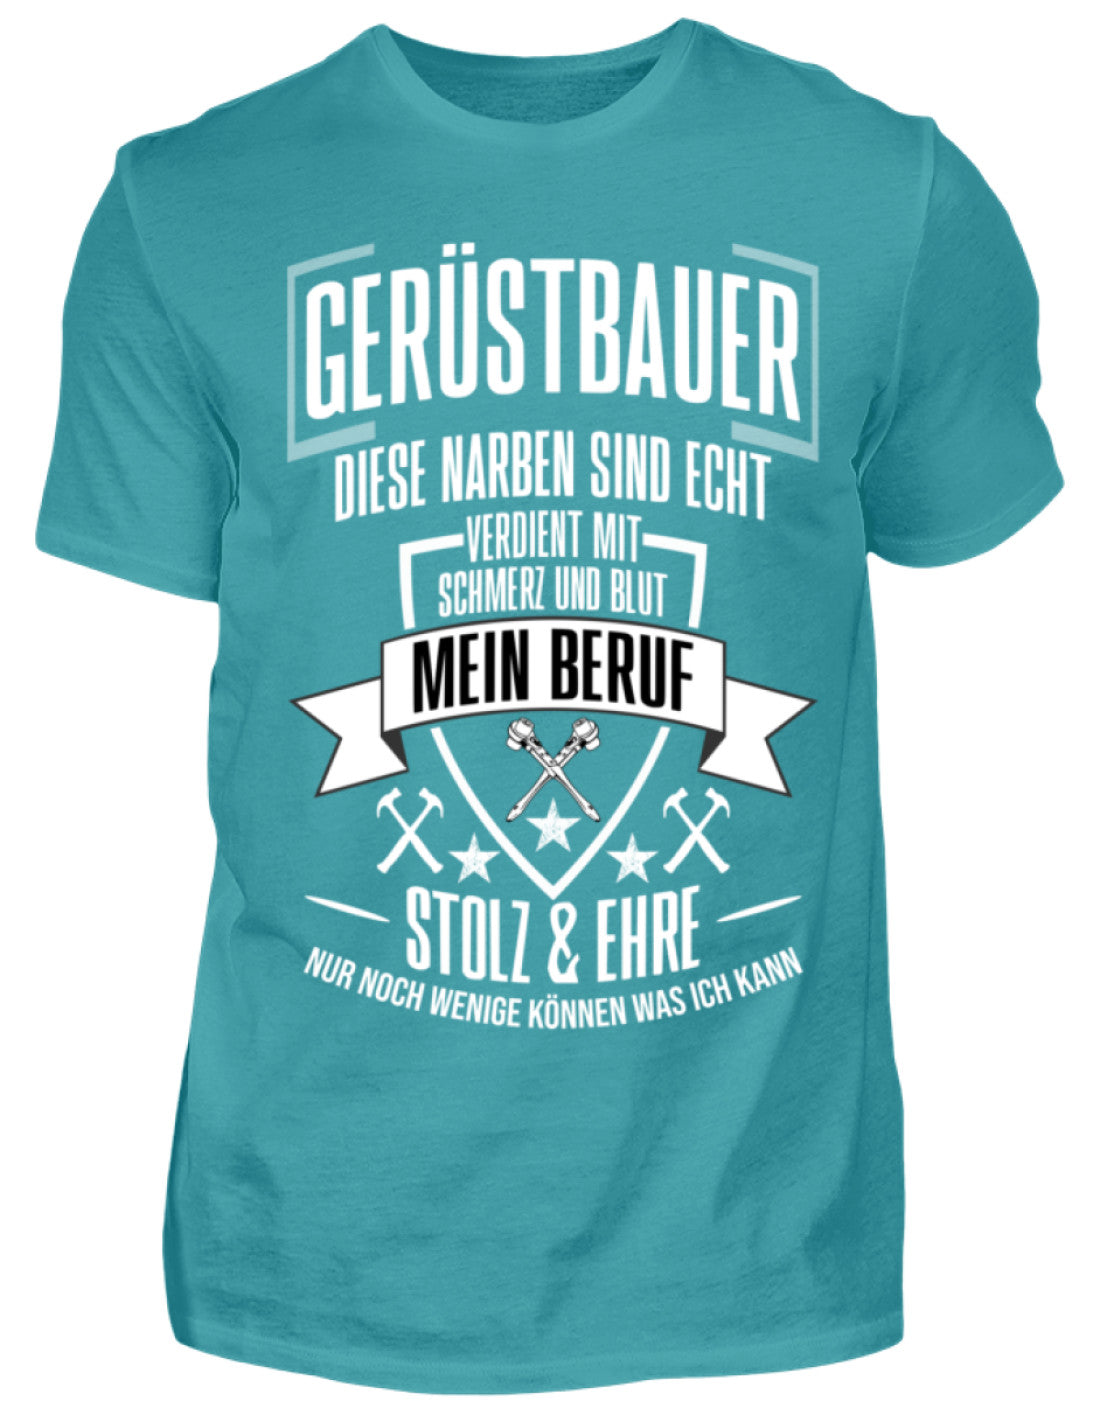 Gerüstbauer T-Shirt / MEIN BERUF €21.95 Gerüstbauer - Shop >>